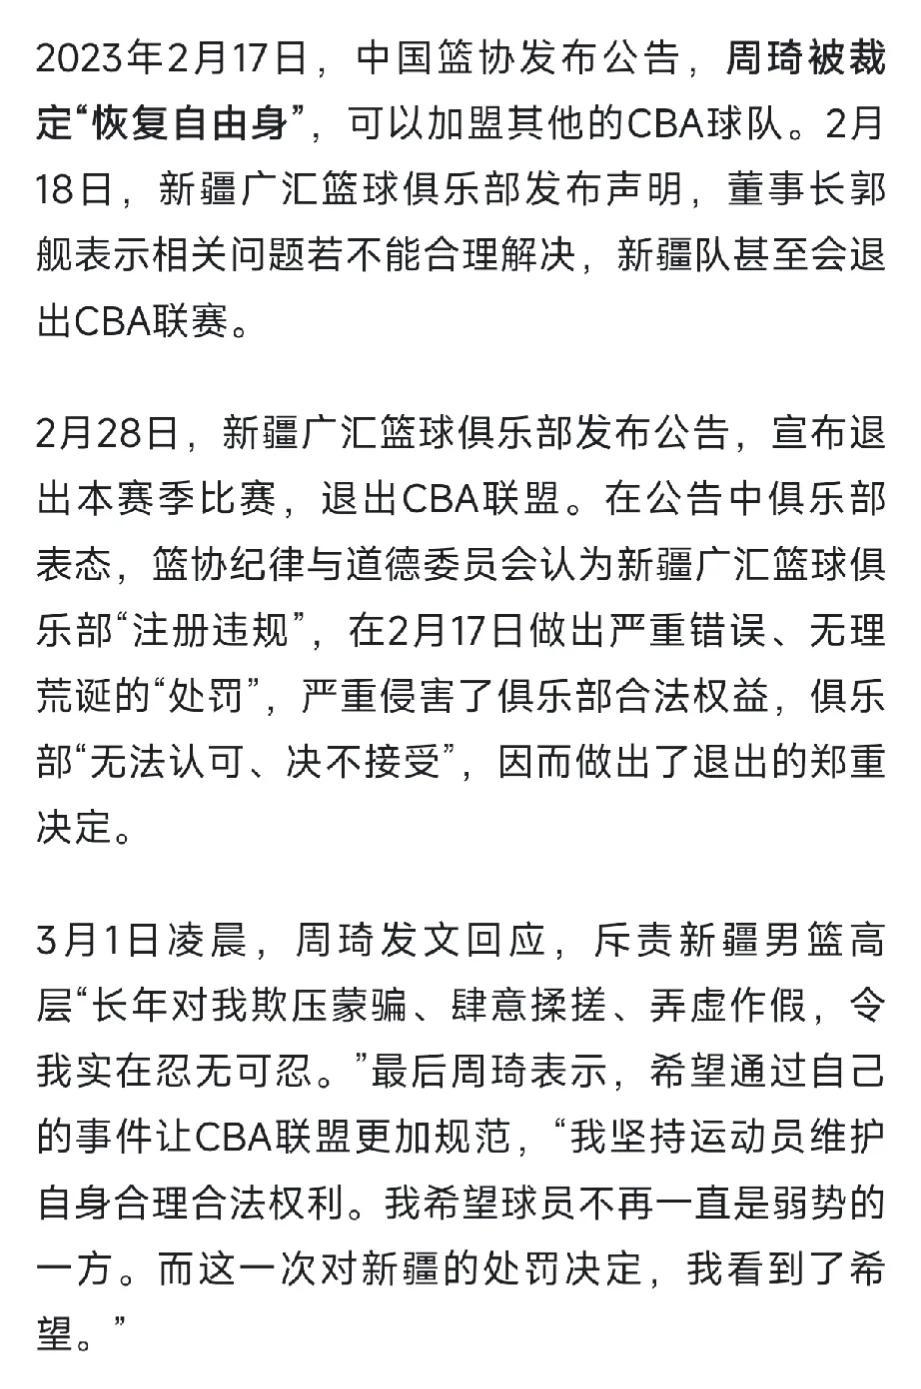 姚明被骂了
就因为他的回应太过官方
不少网友对他很失望
觉得他变了

其实这件事(8)